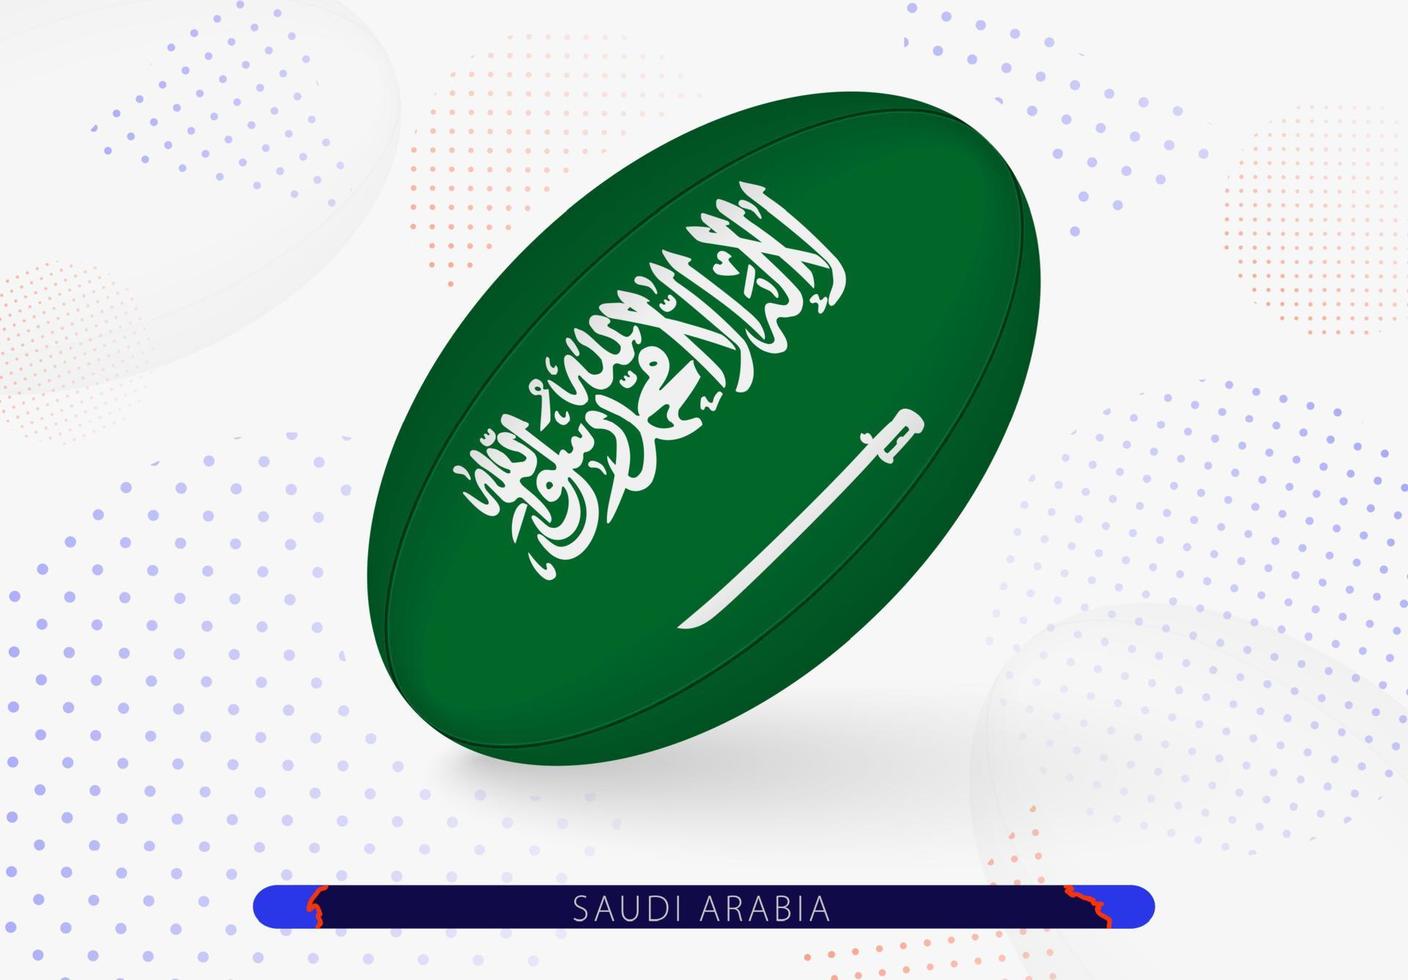 ballon de rugby avec le drapeau de l'arabie saoudite dessus. équipement pour l'équipe de rugby d'arabie saoudite. vecteur